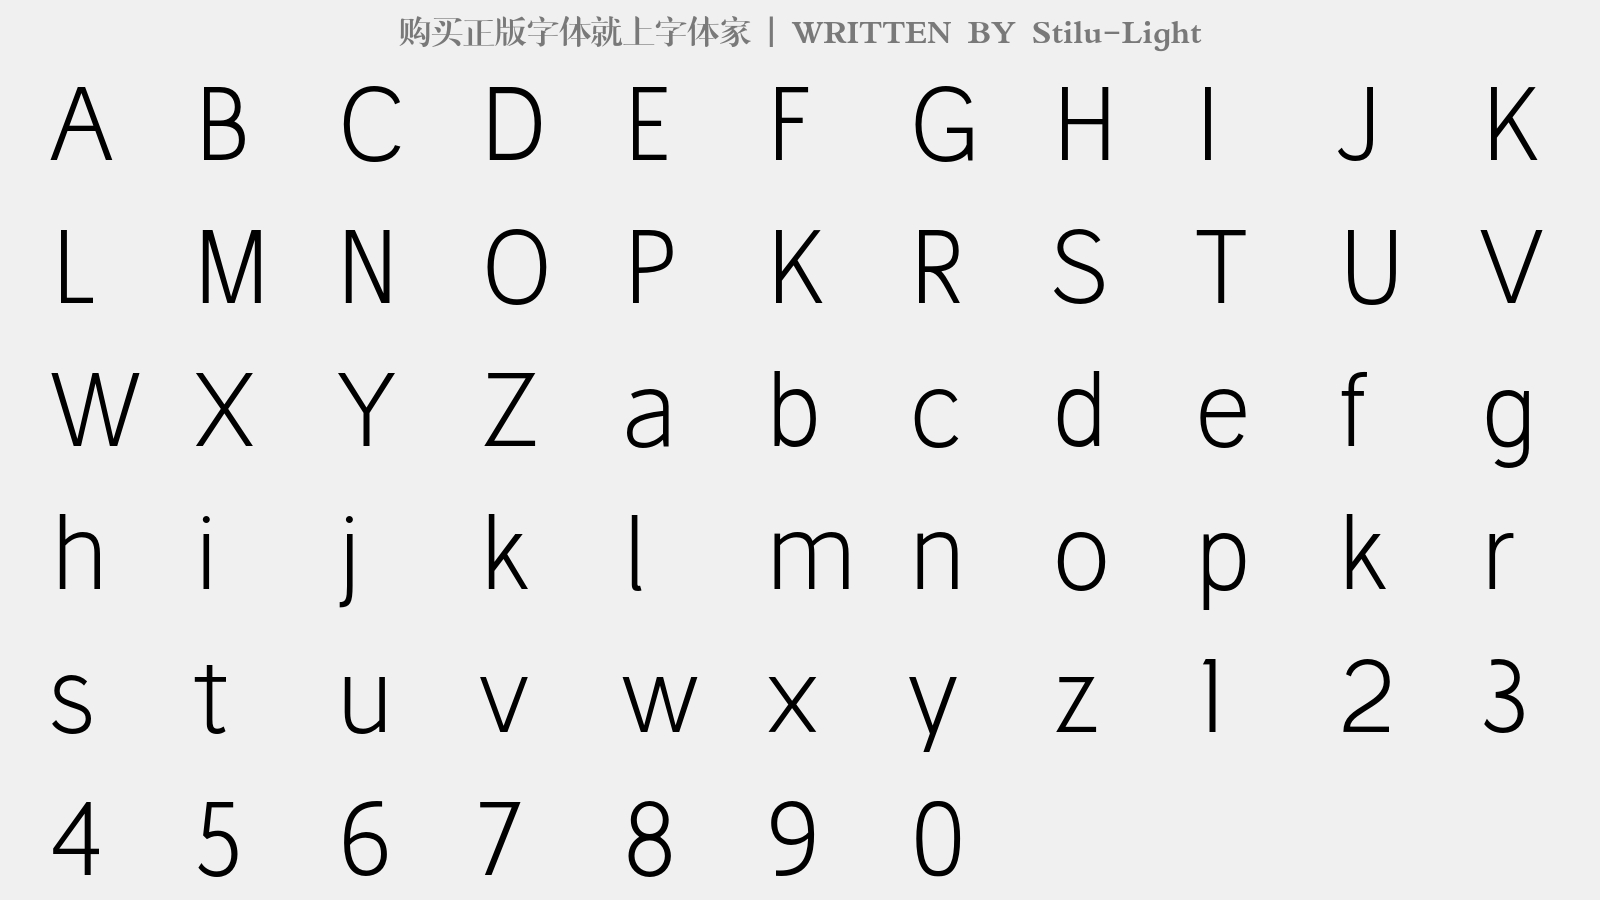 Stilu-Light - 大写字母/小写字母/数字